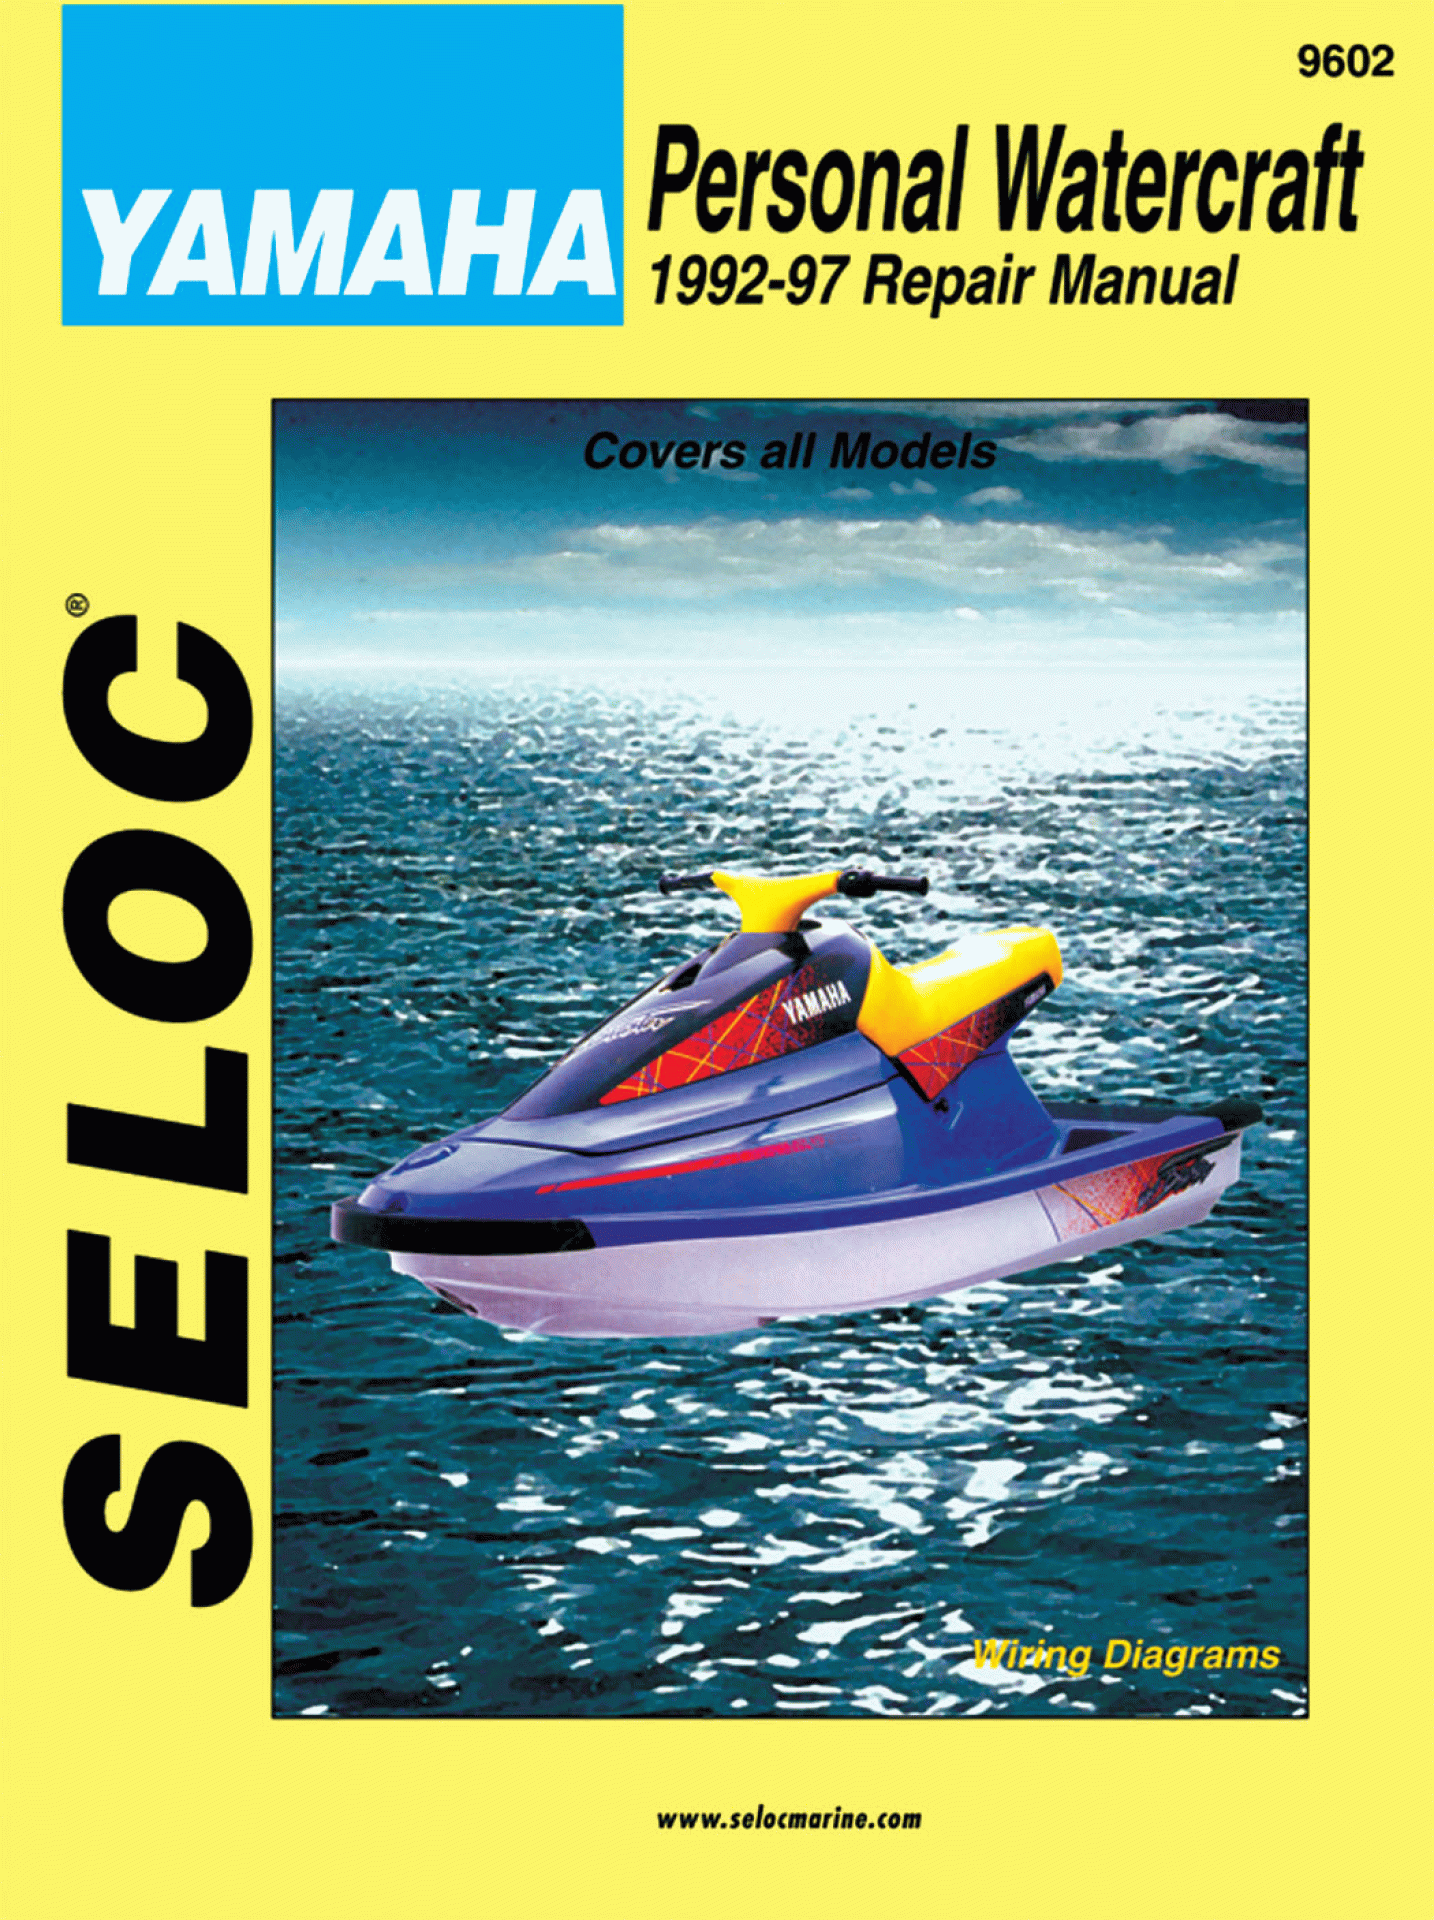 SELOC PUBLISHING | 18-09602 | REPAIR MANUAL Yamaha Personal Watercraft 1992-97